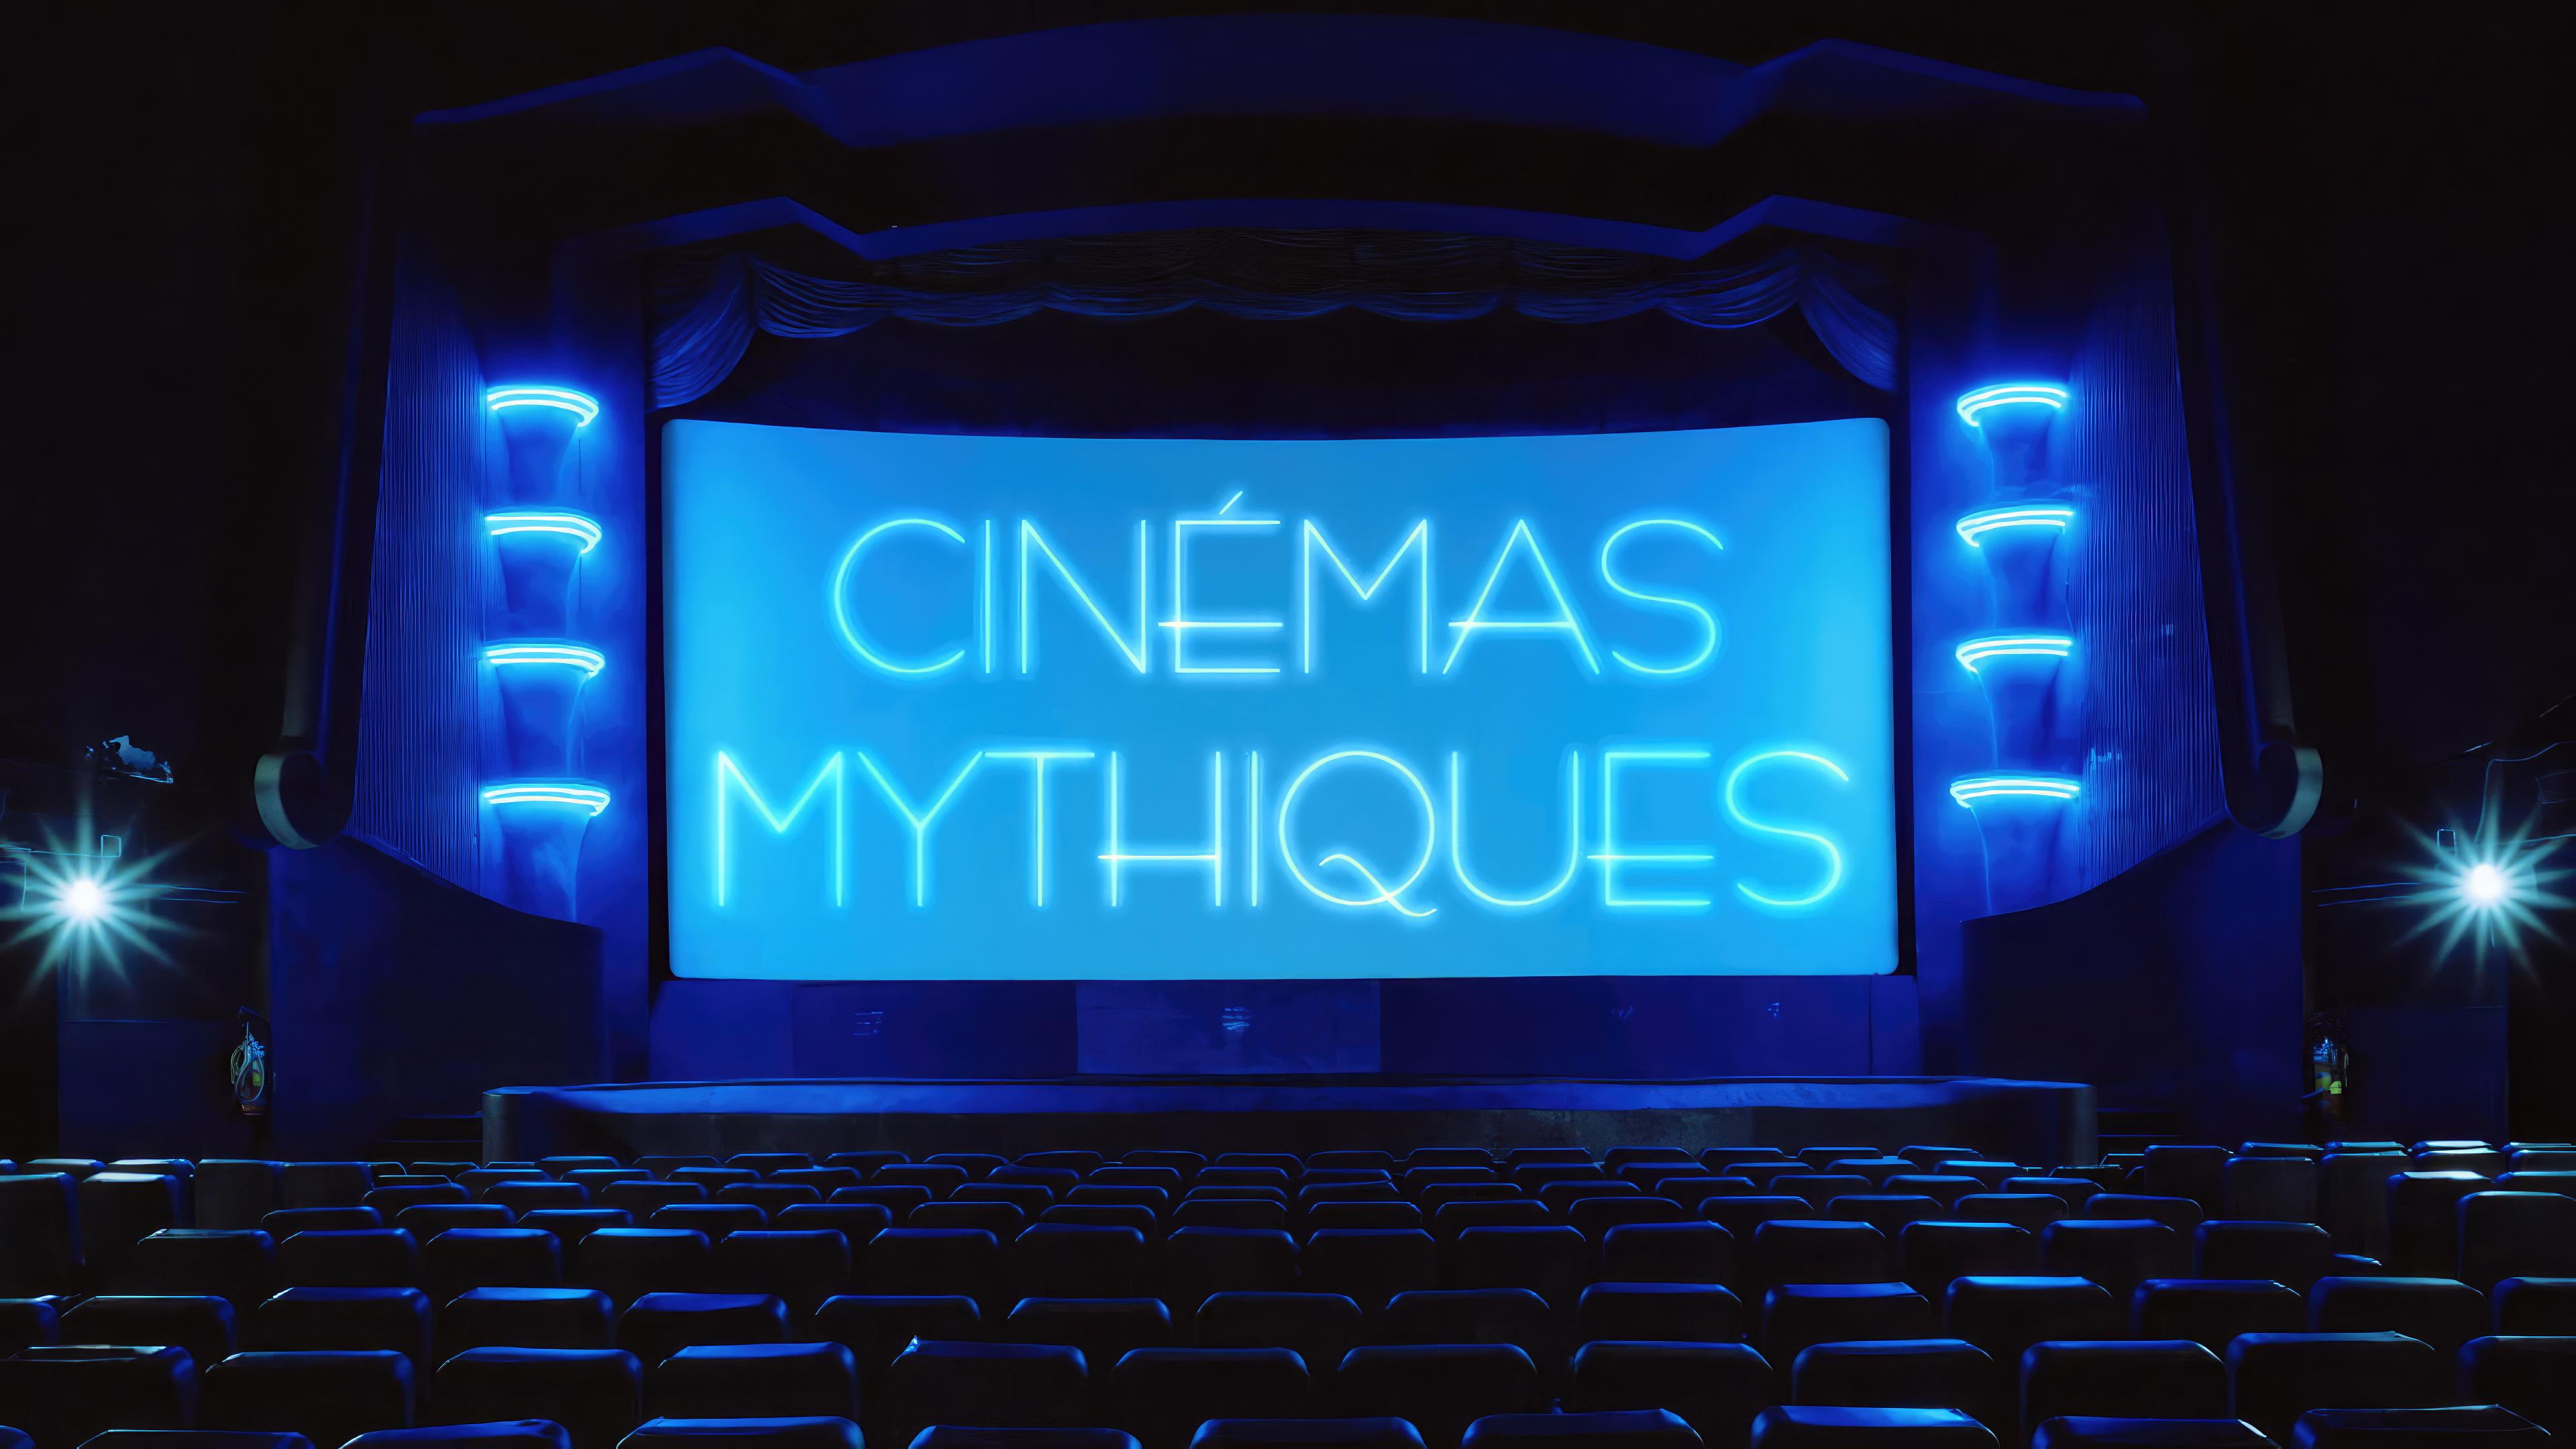 Cinémas mythiques